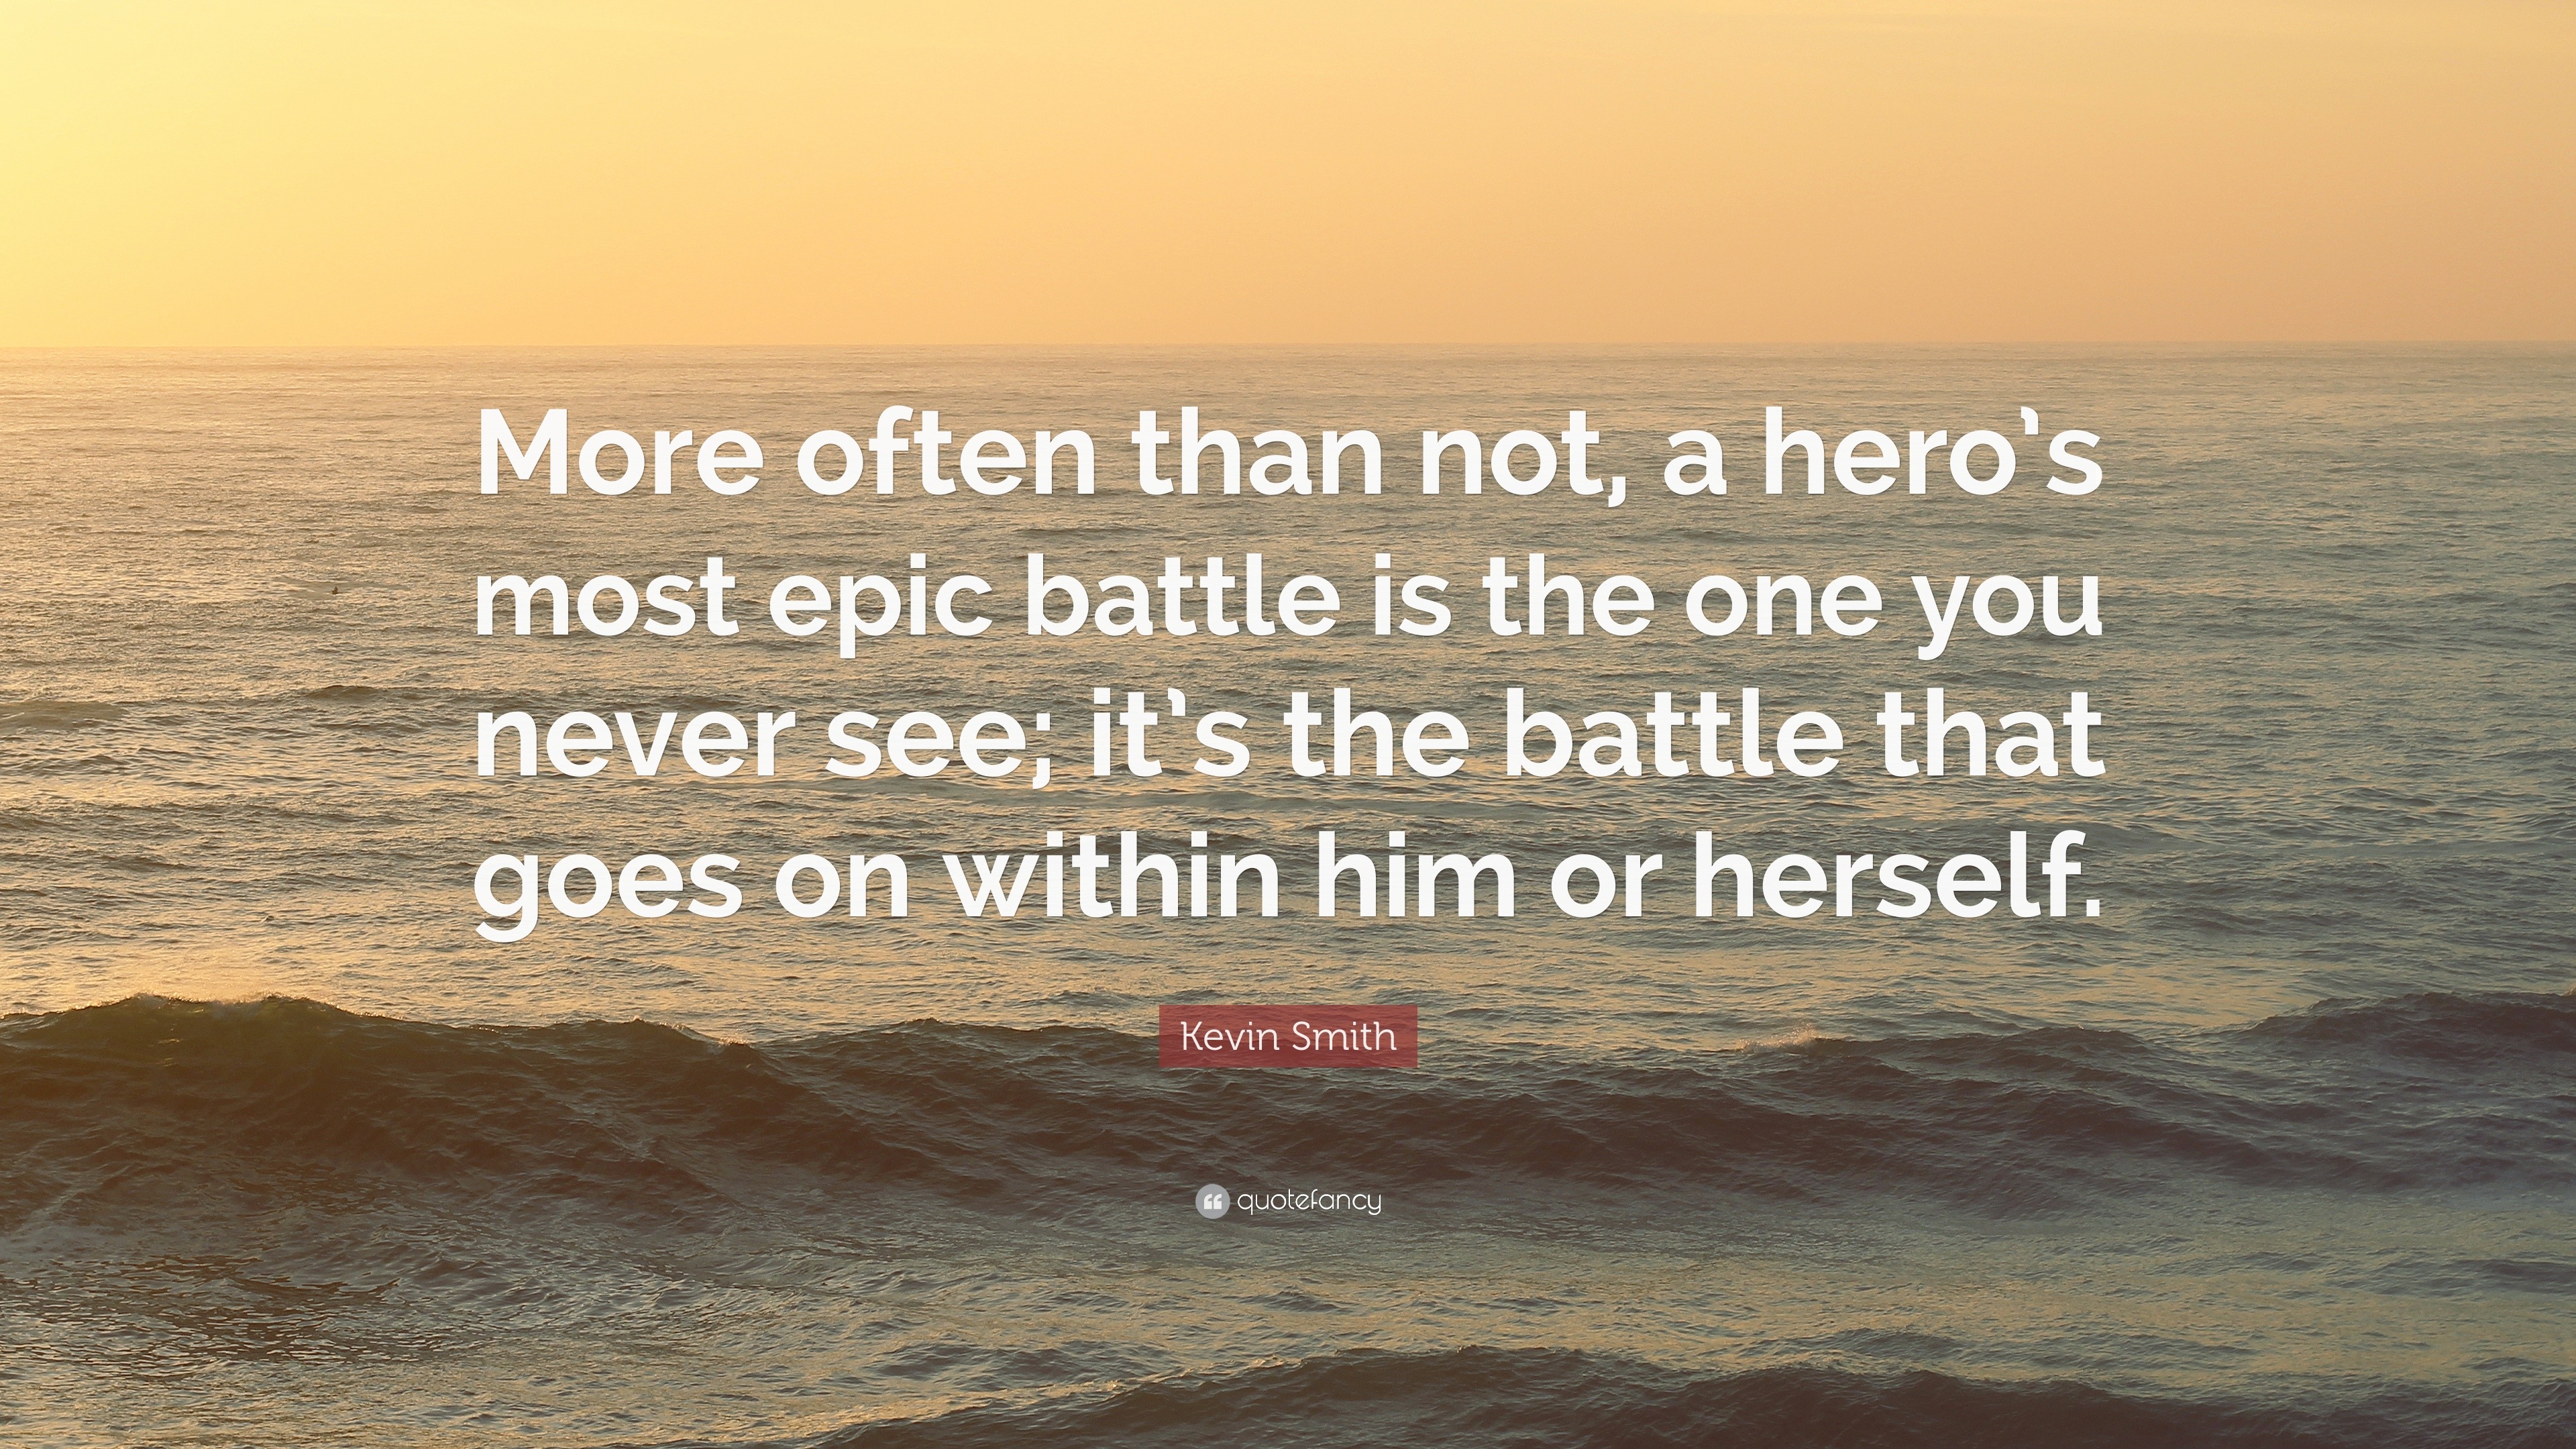 Epic hero quotes